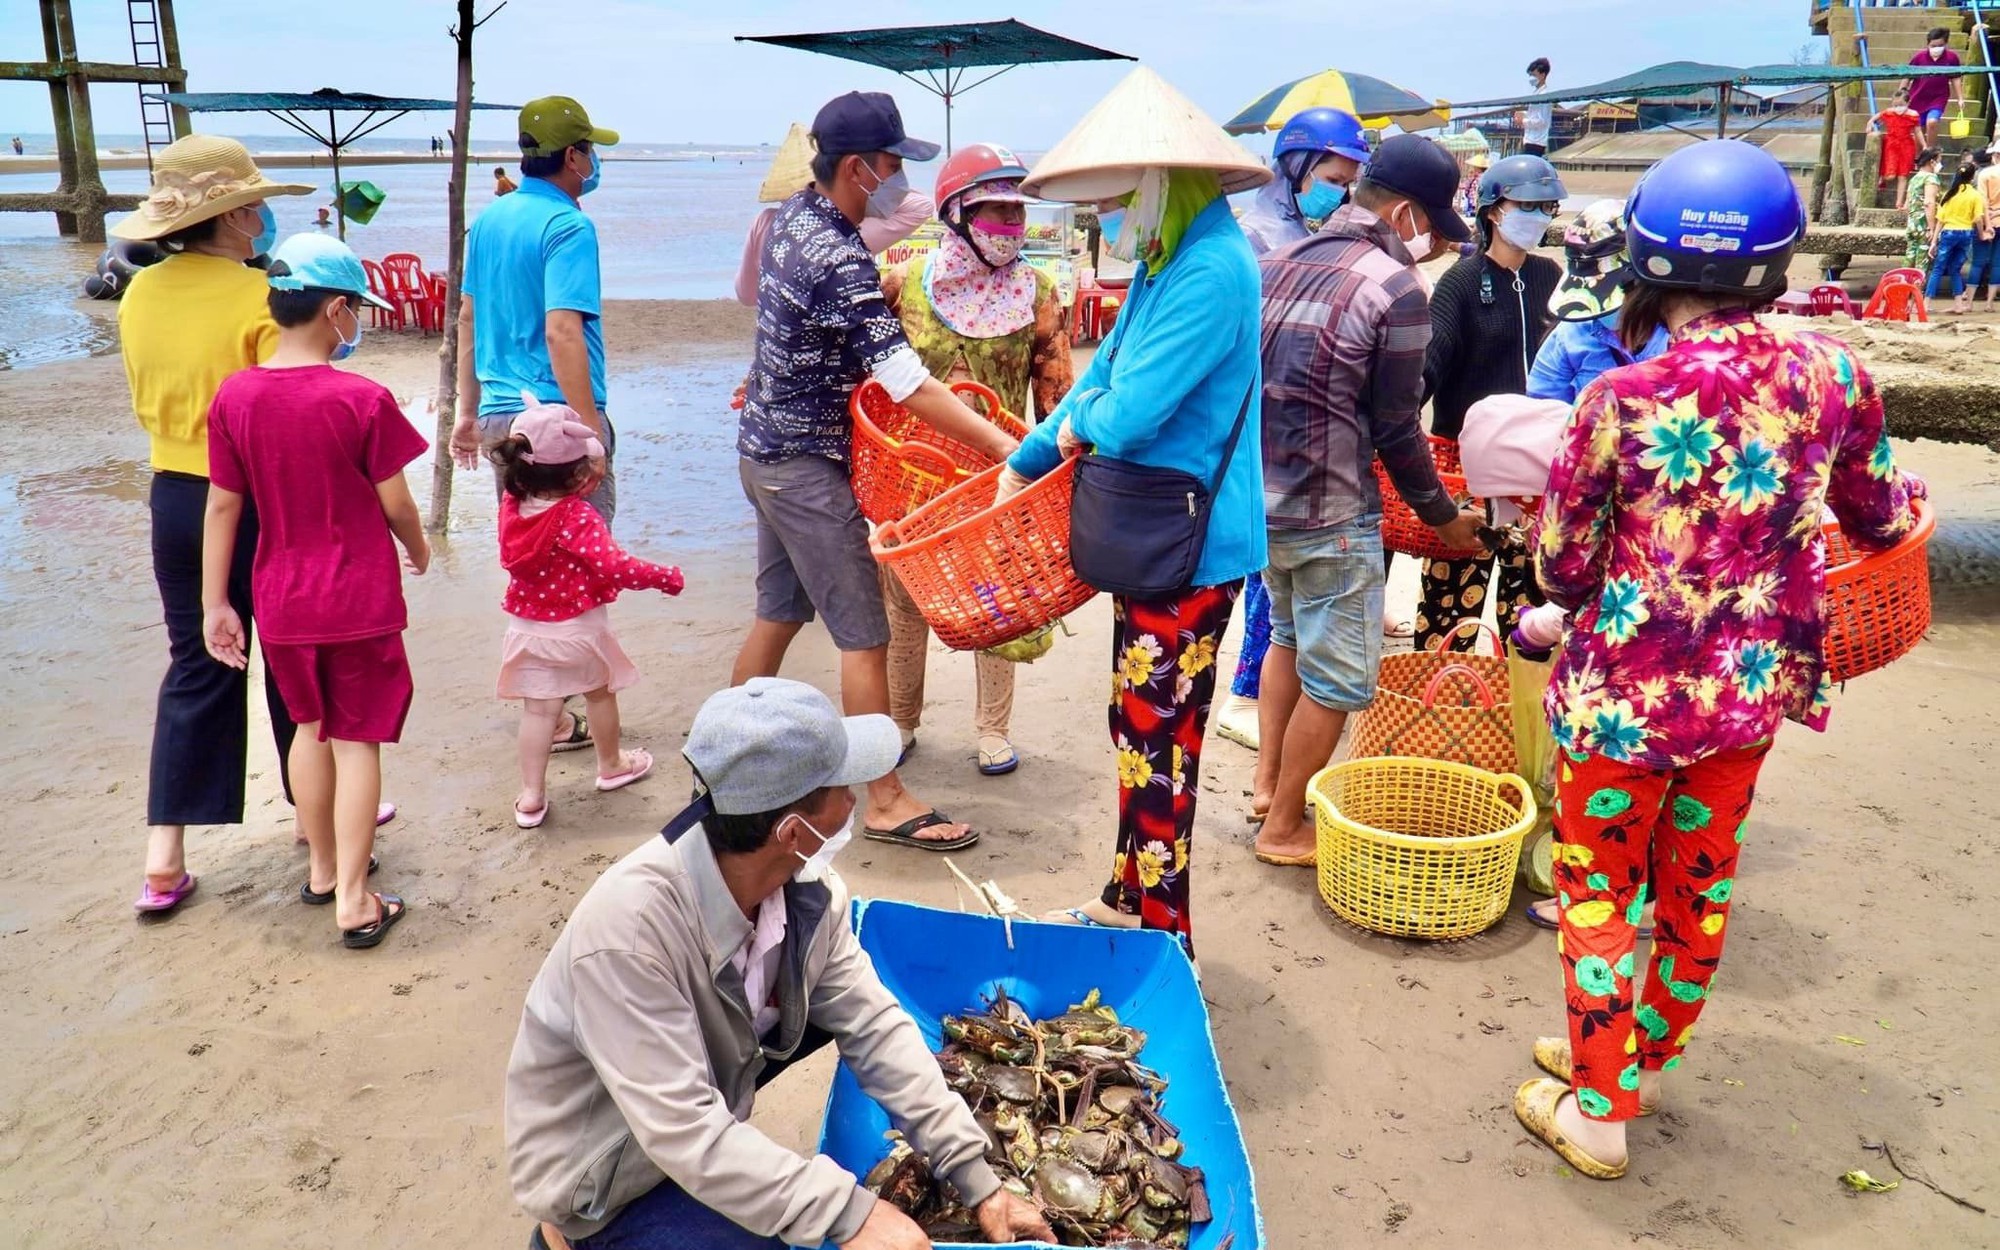 Chợ biển ở một huyện của Bến Tre họp ngay mép sóng, mua bán la liệt tôm, cua, cá, ốc ngon, lạ mắt